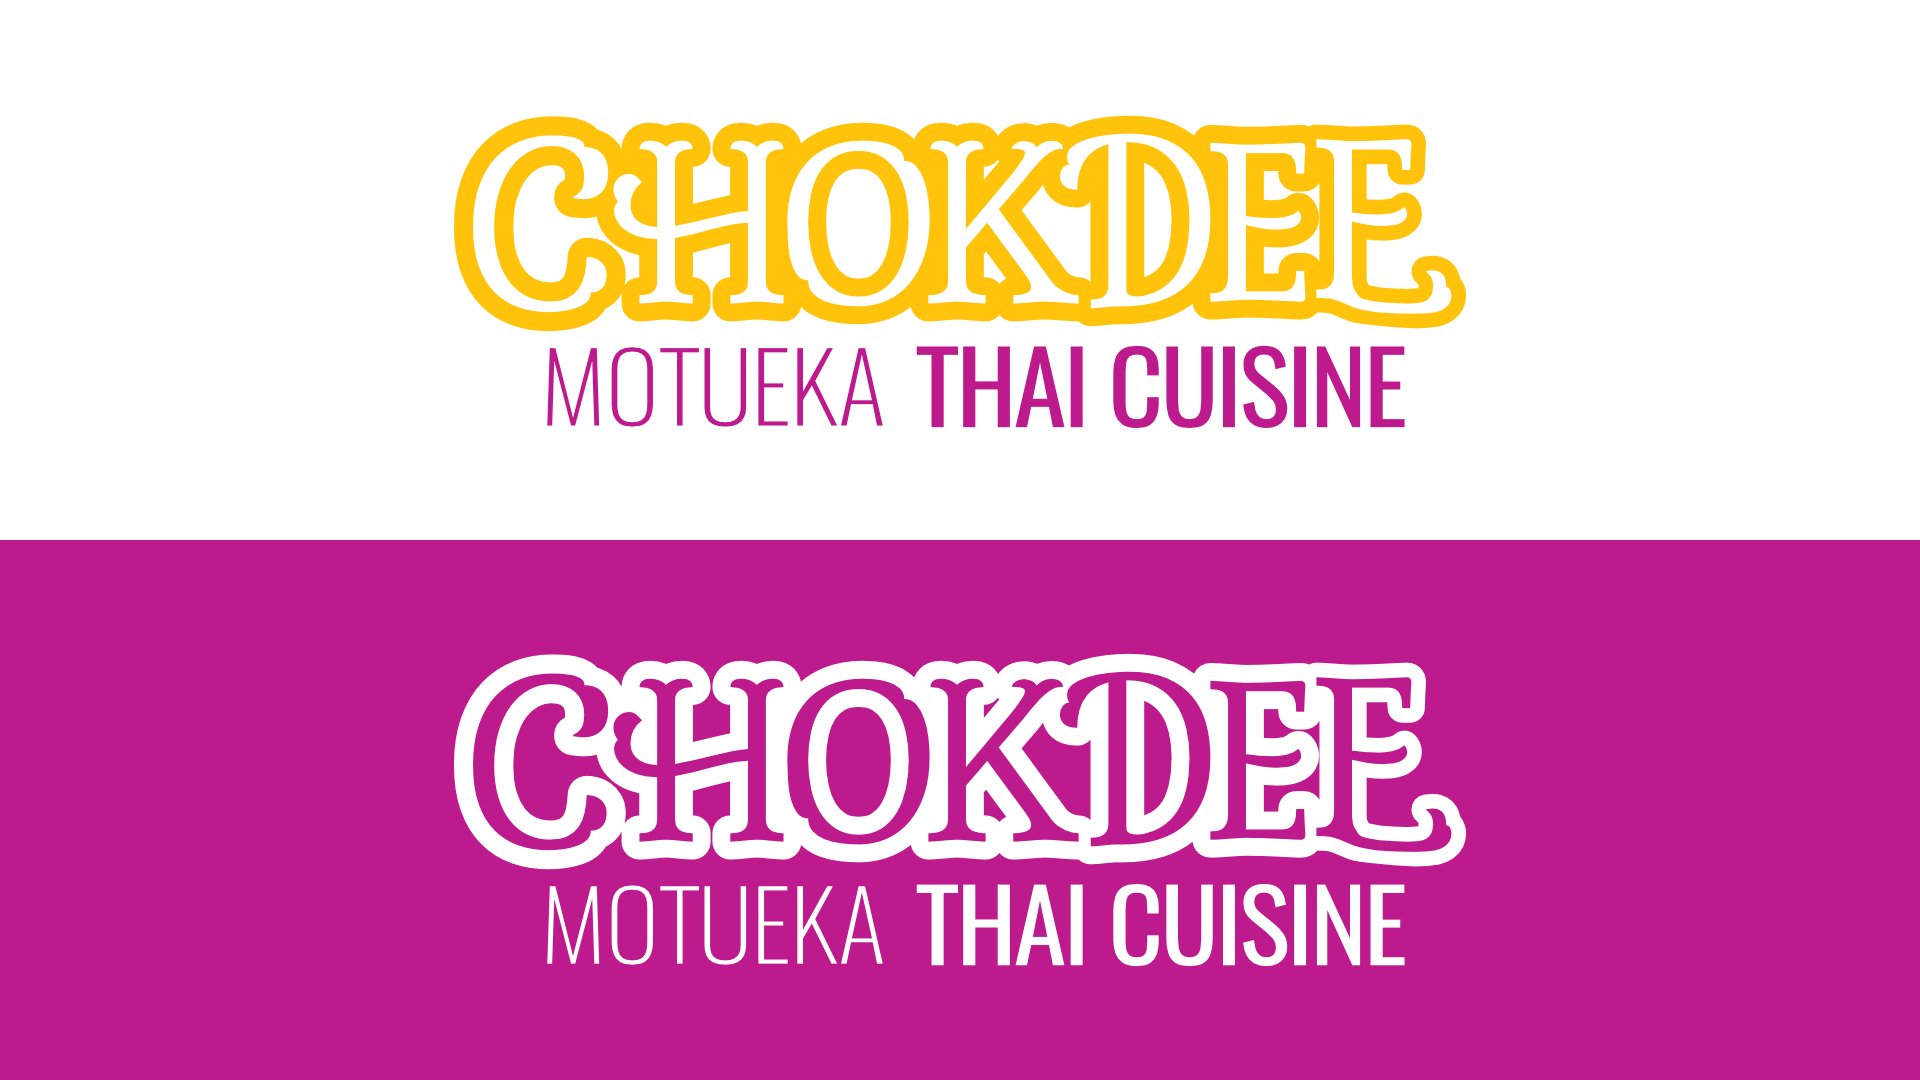 Chokdee Thai Cuisine logo